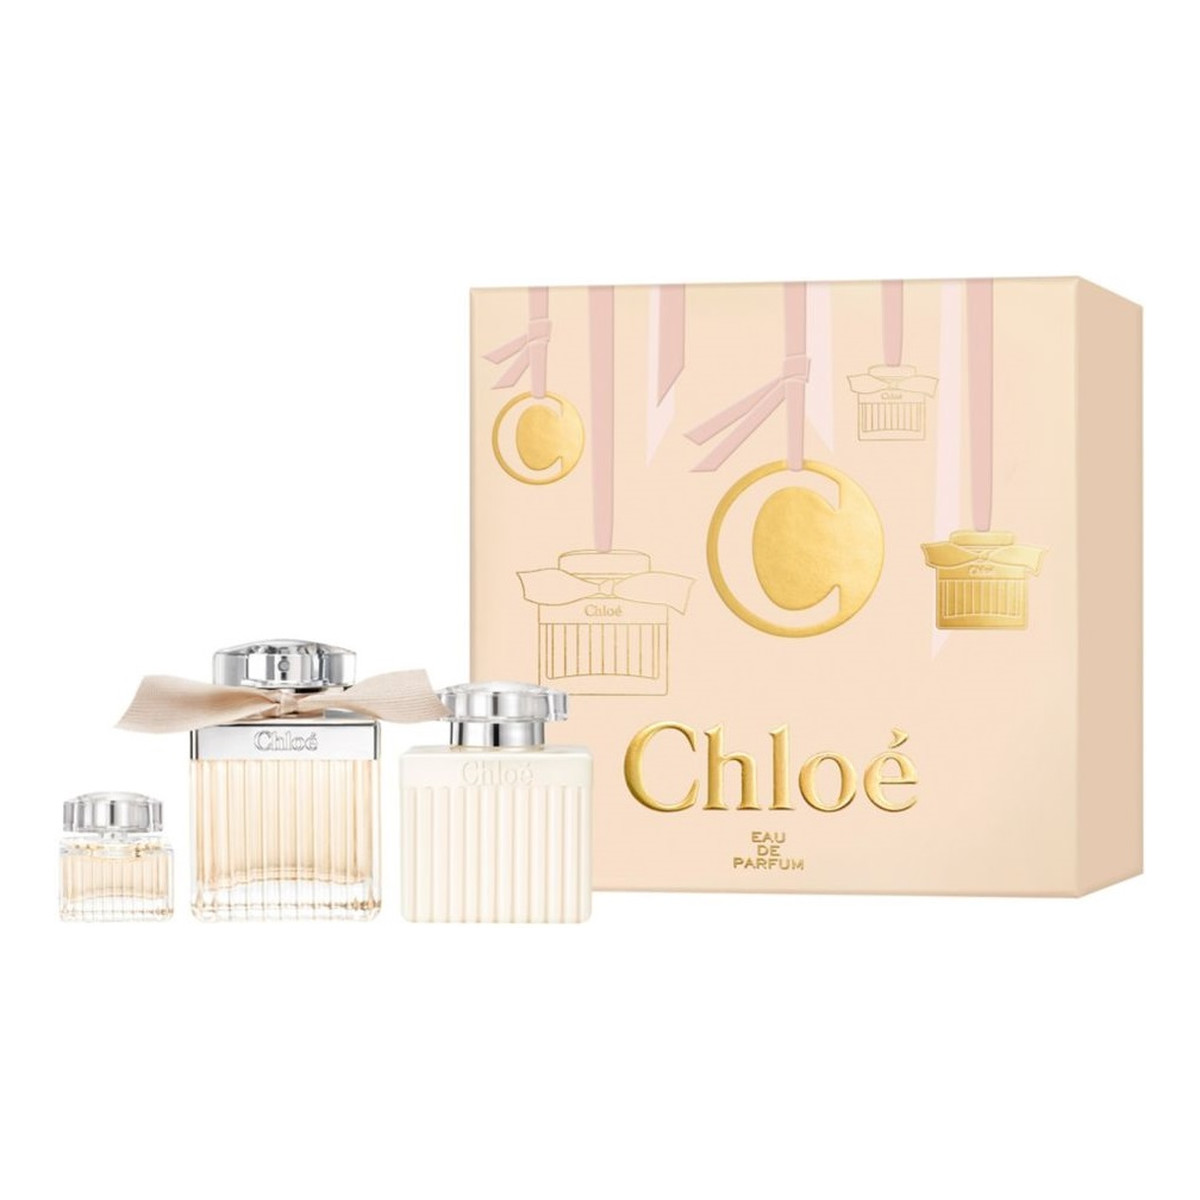 Chloe Zestaw woda perfumowana spray 75ml + balsam do ciała 100ml + miniatura wody perfumowanej 5ml